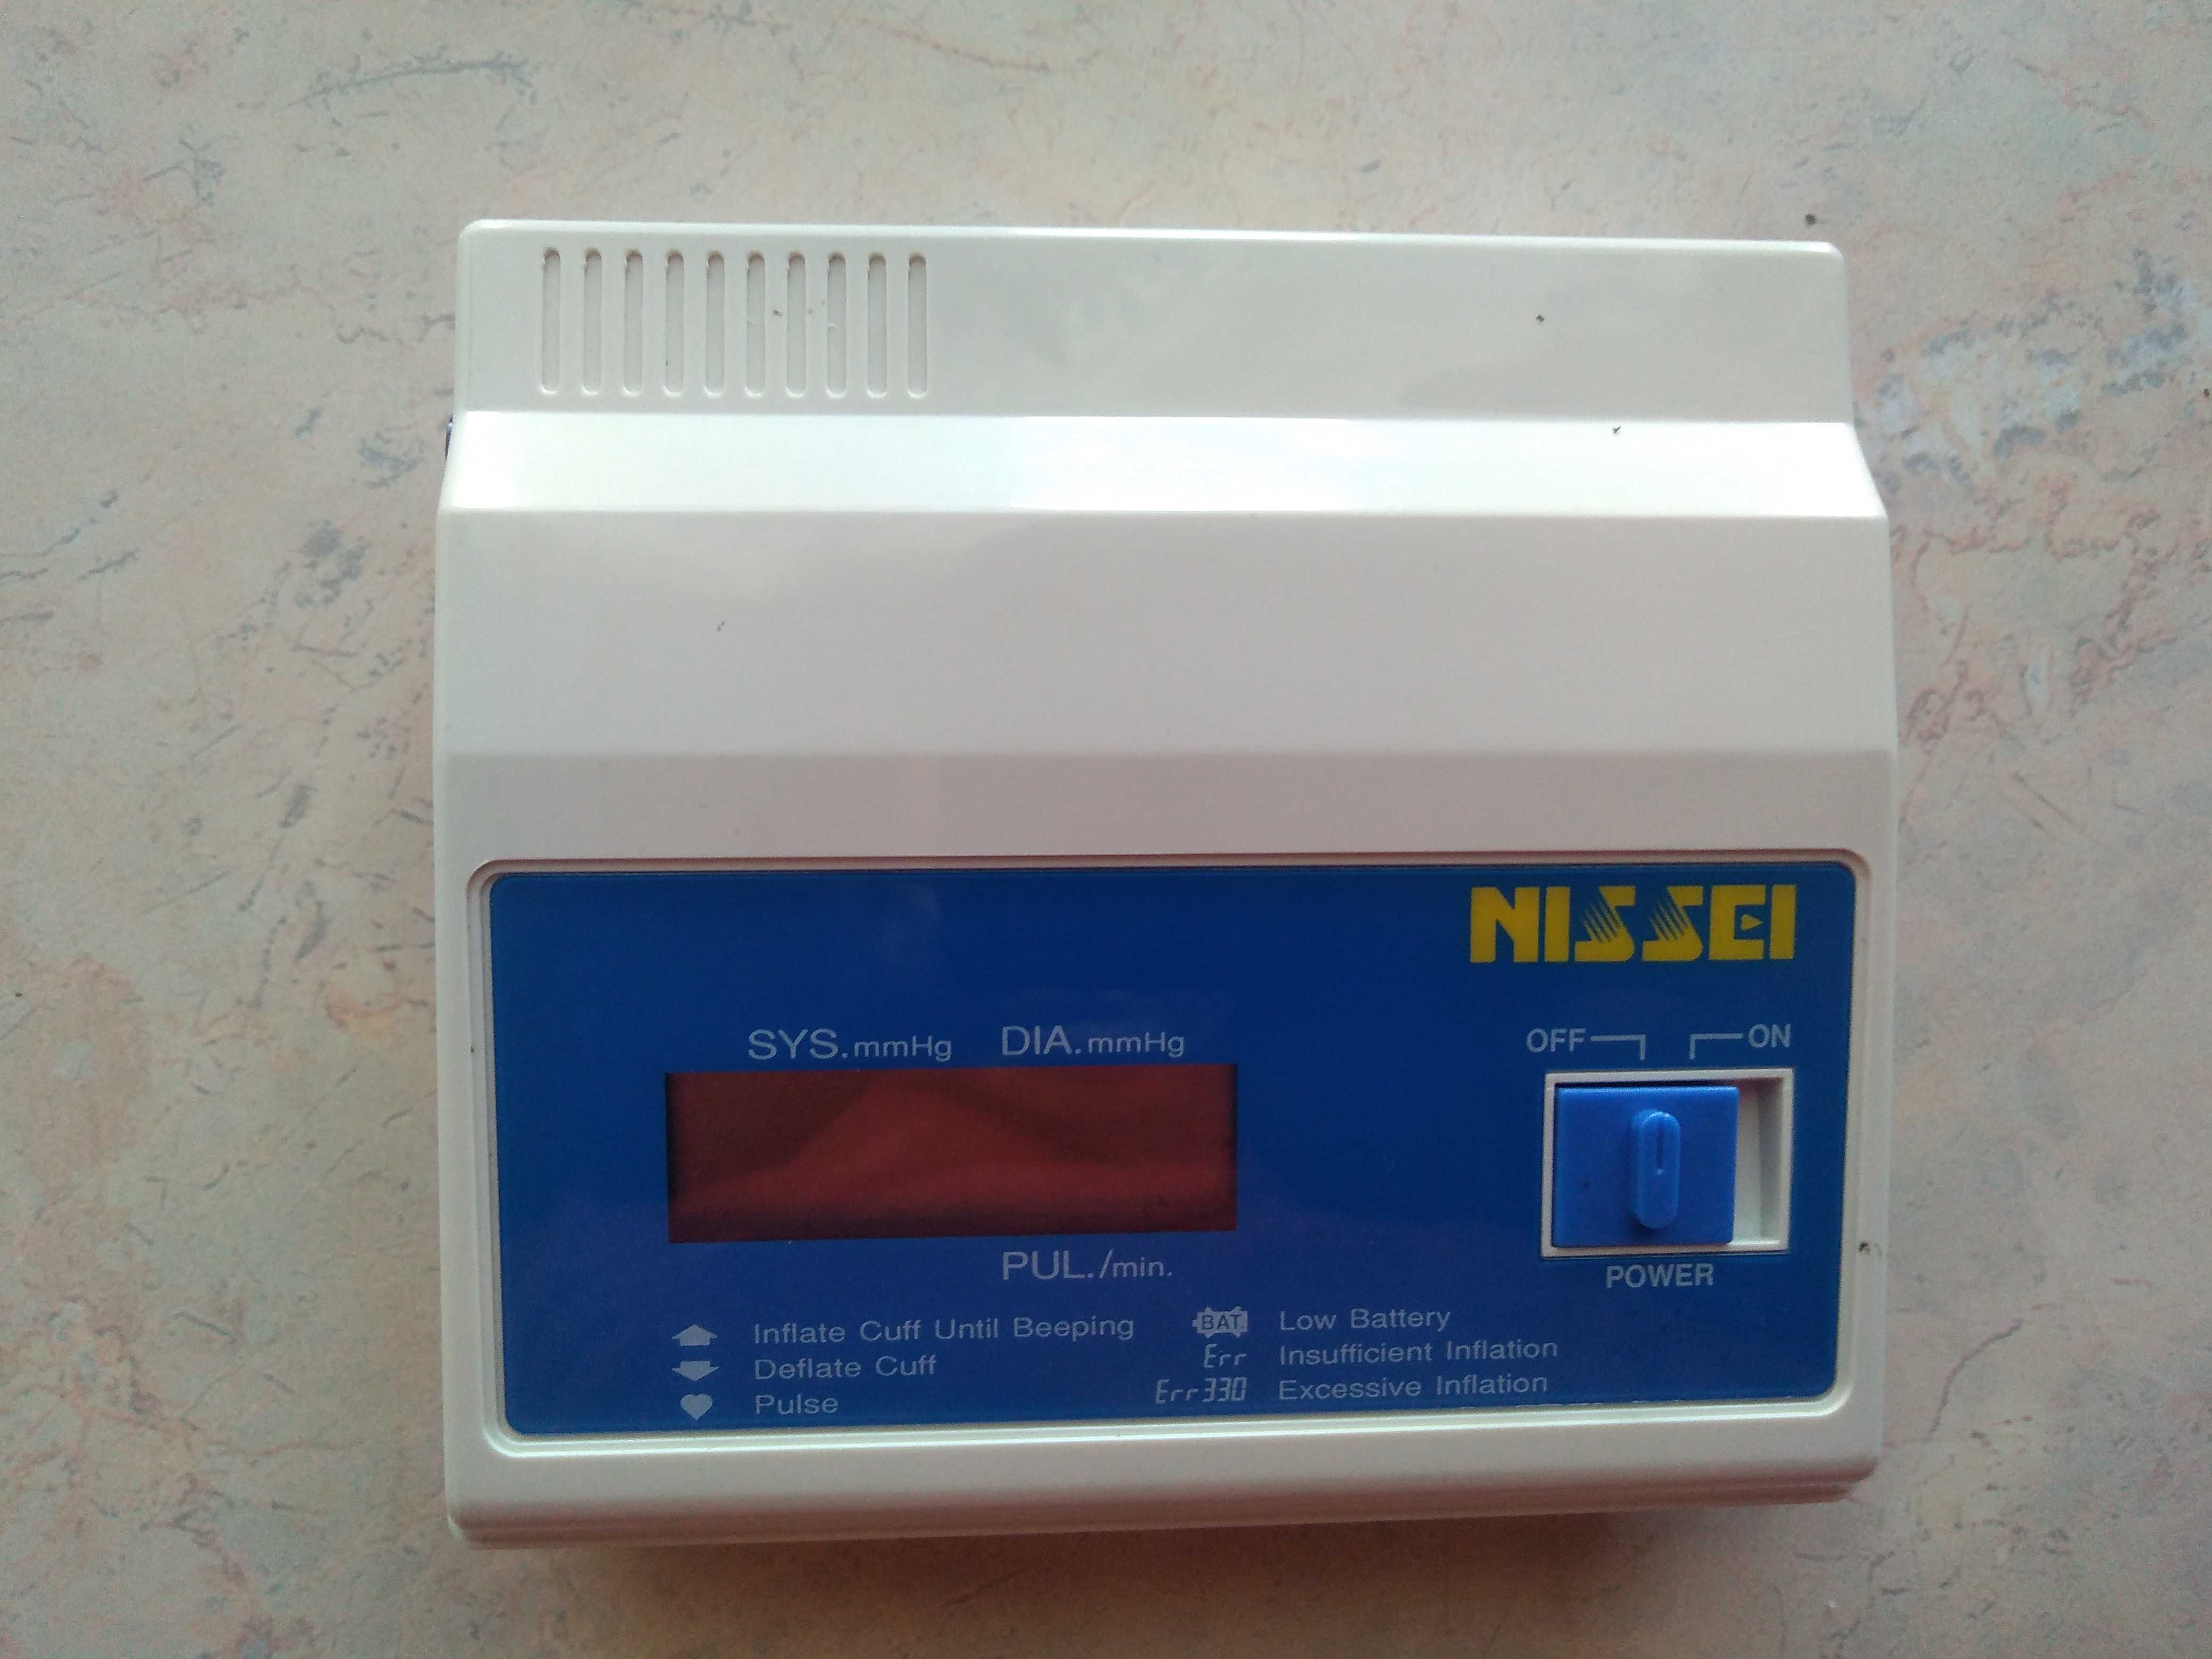 Ciśnieniomierz NISSEI model DS-114.Czytaj opis.